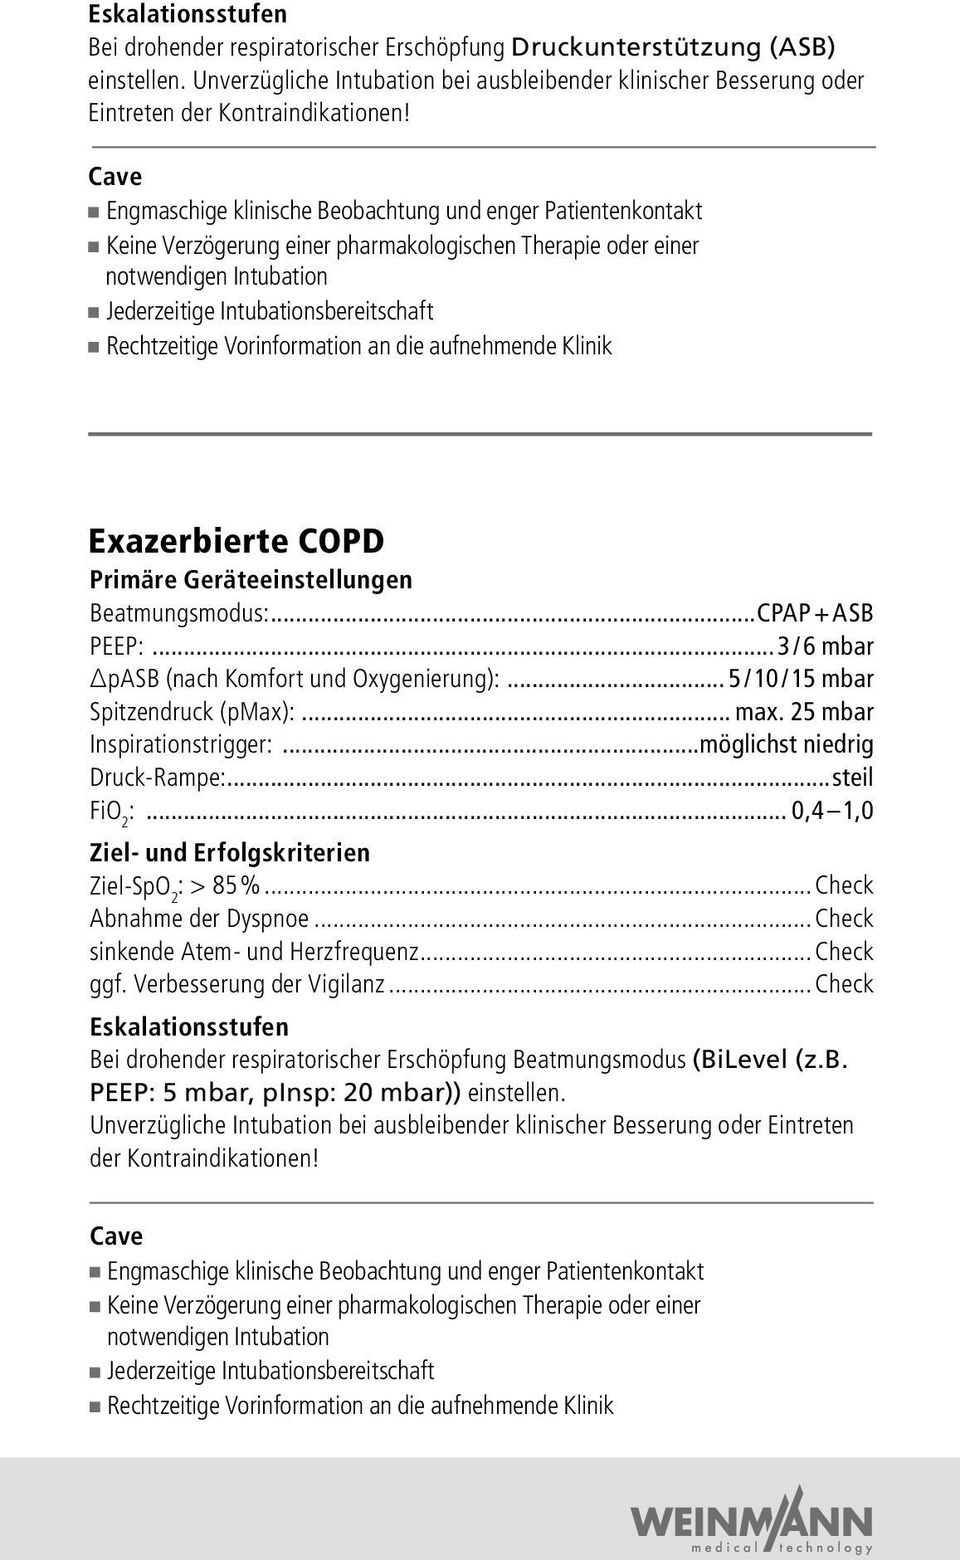 Rechtzeitige Vorinformation an die aufnehmende Klinik Exazerbierte COPD Primäre Geräteeinstellungen Beatmungsmodus: CPAP + ASB PEEP: 3 / 6 mbar pasb (nach Komfort und Oxygenierung): 5 / 10 / 15 mbar